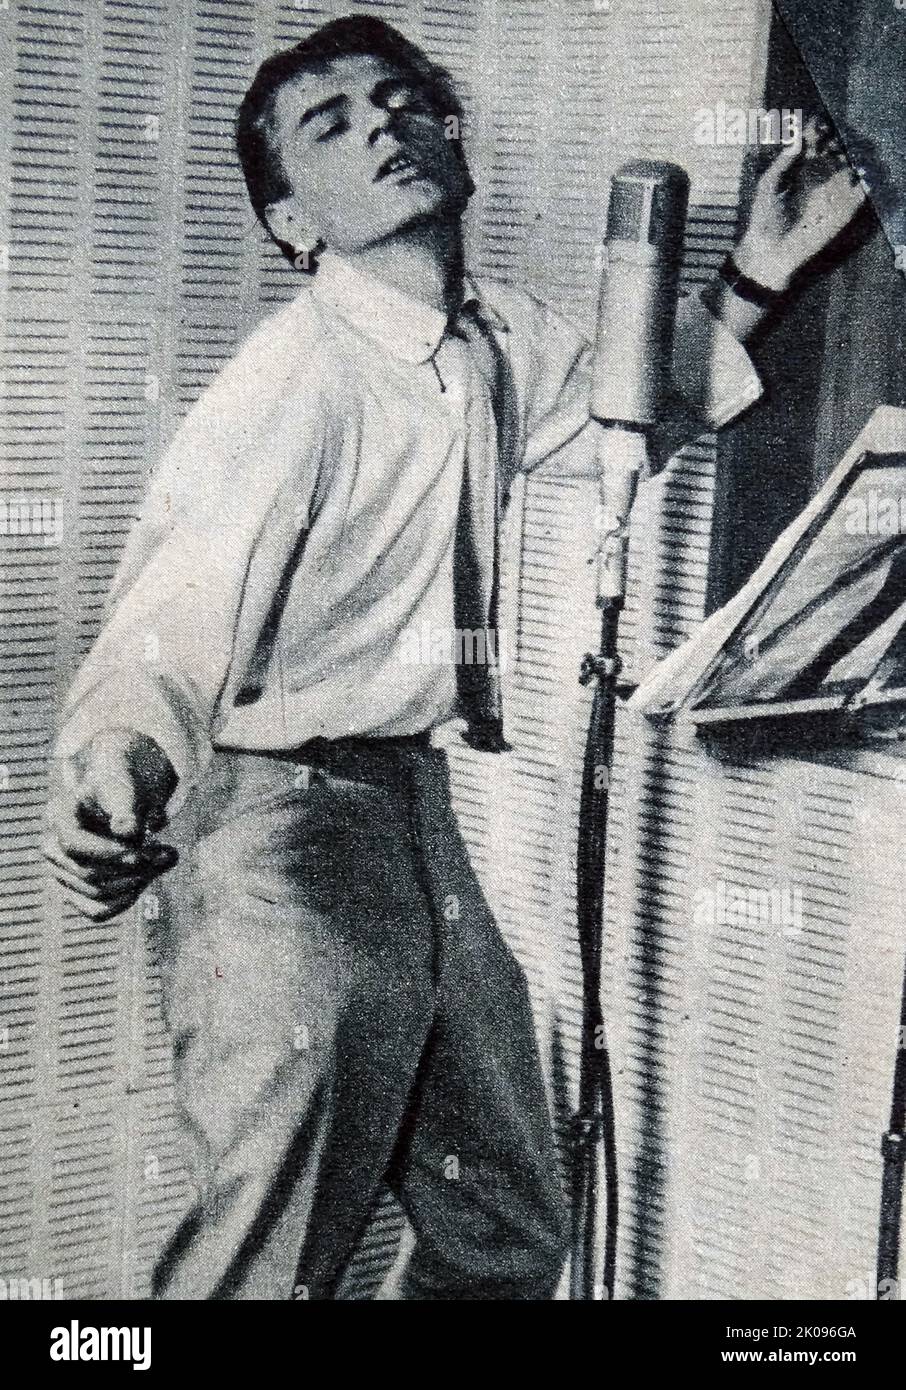 Fe de Adán. Terence Nelhams Wright (23 de junio de 1940 - 8 de marzo de 2003), conocido como Adam Faith, fue un ídolo, cantante, actor y periodista financiero inglés. Fue uno de los actos más destacados de la década de 1960s. Foto de stock